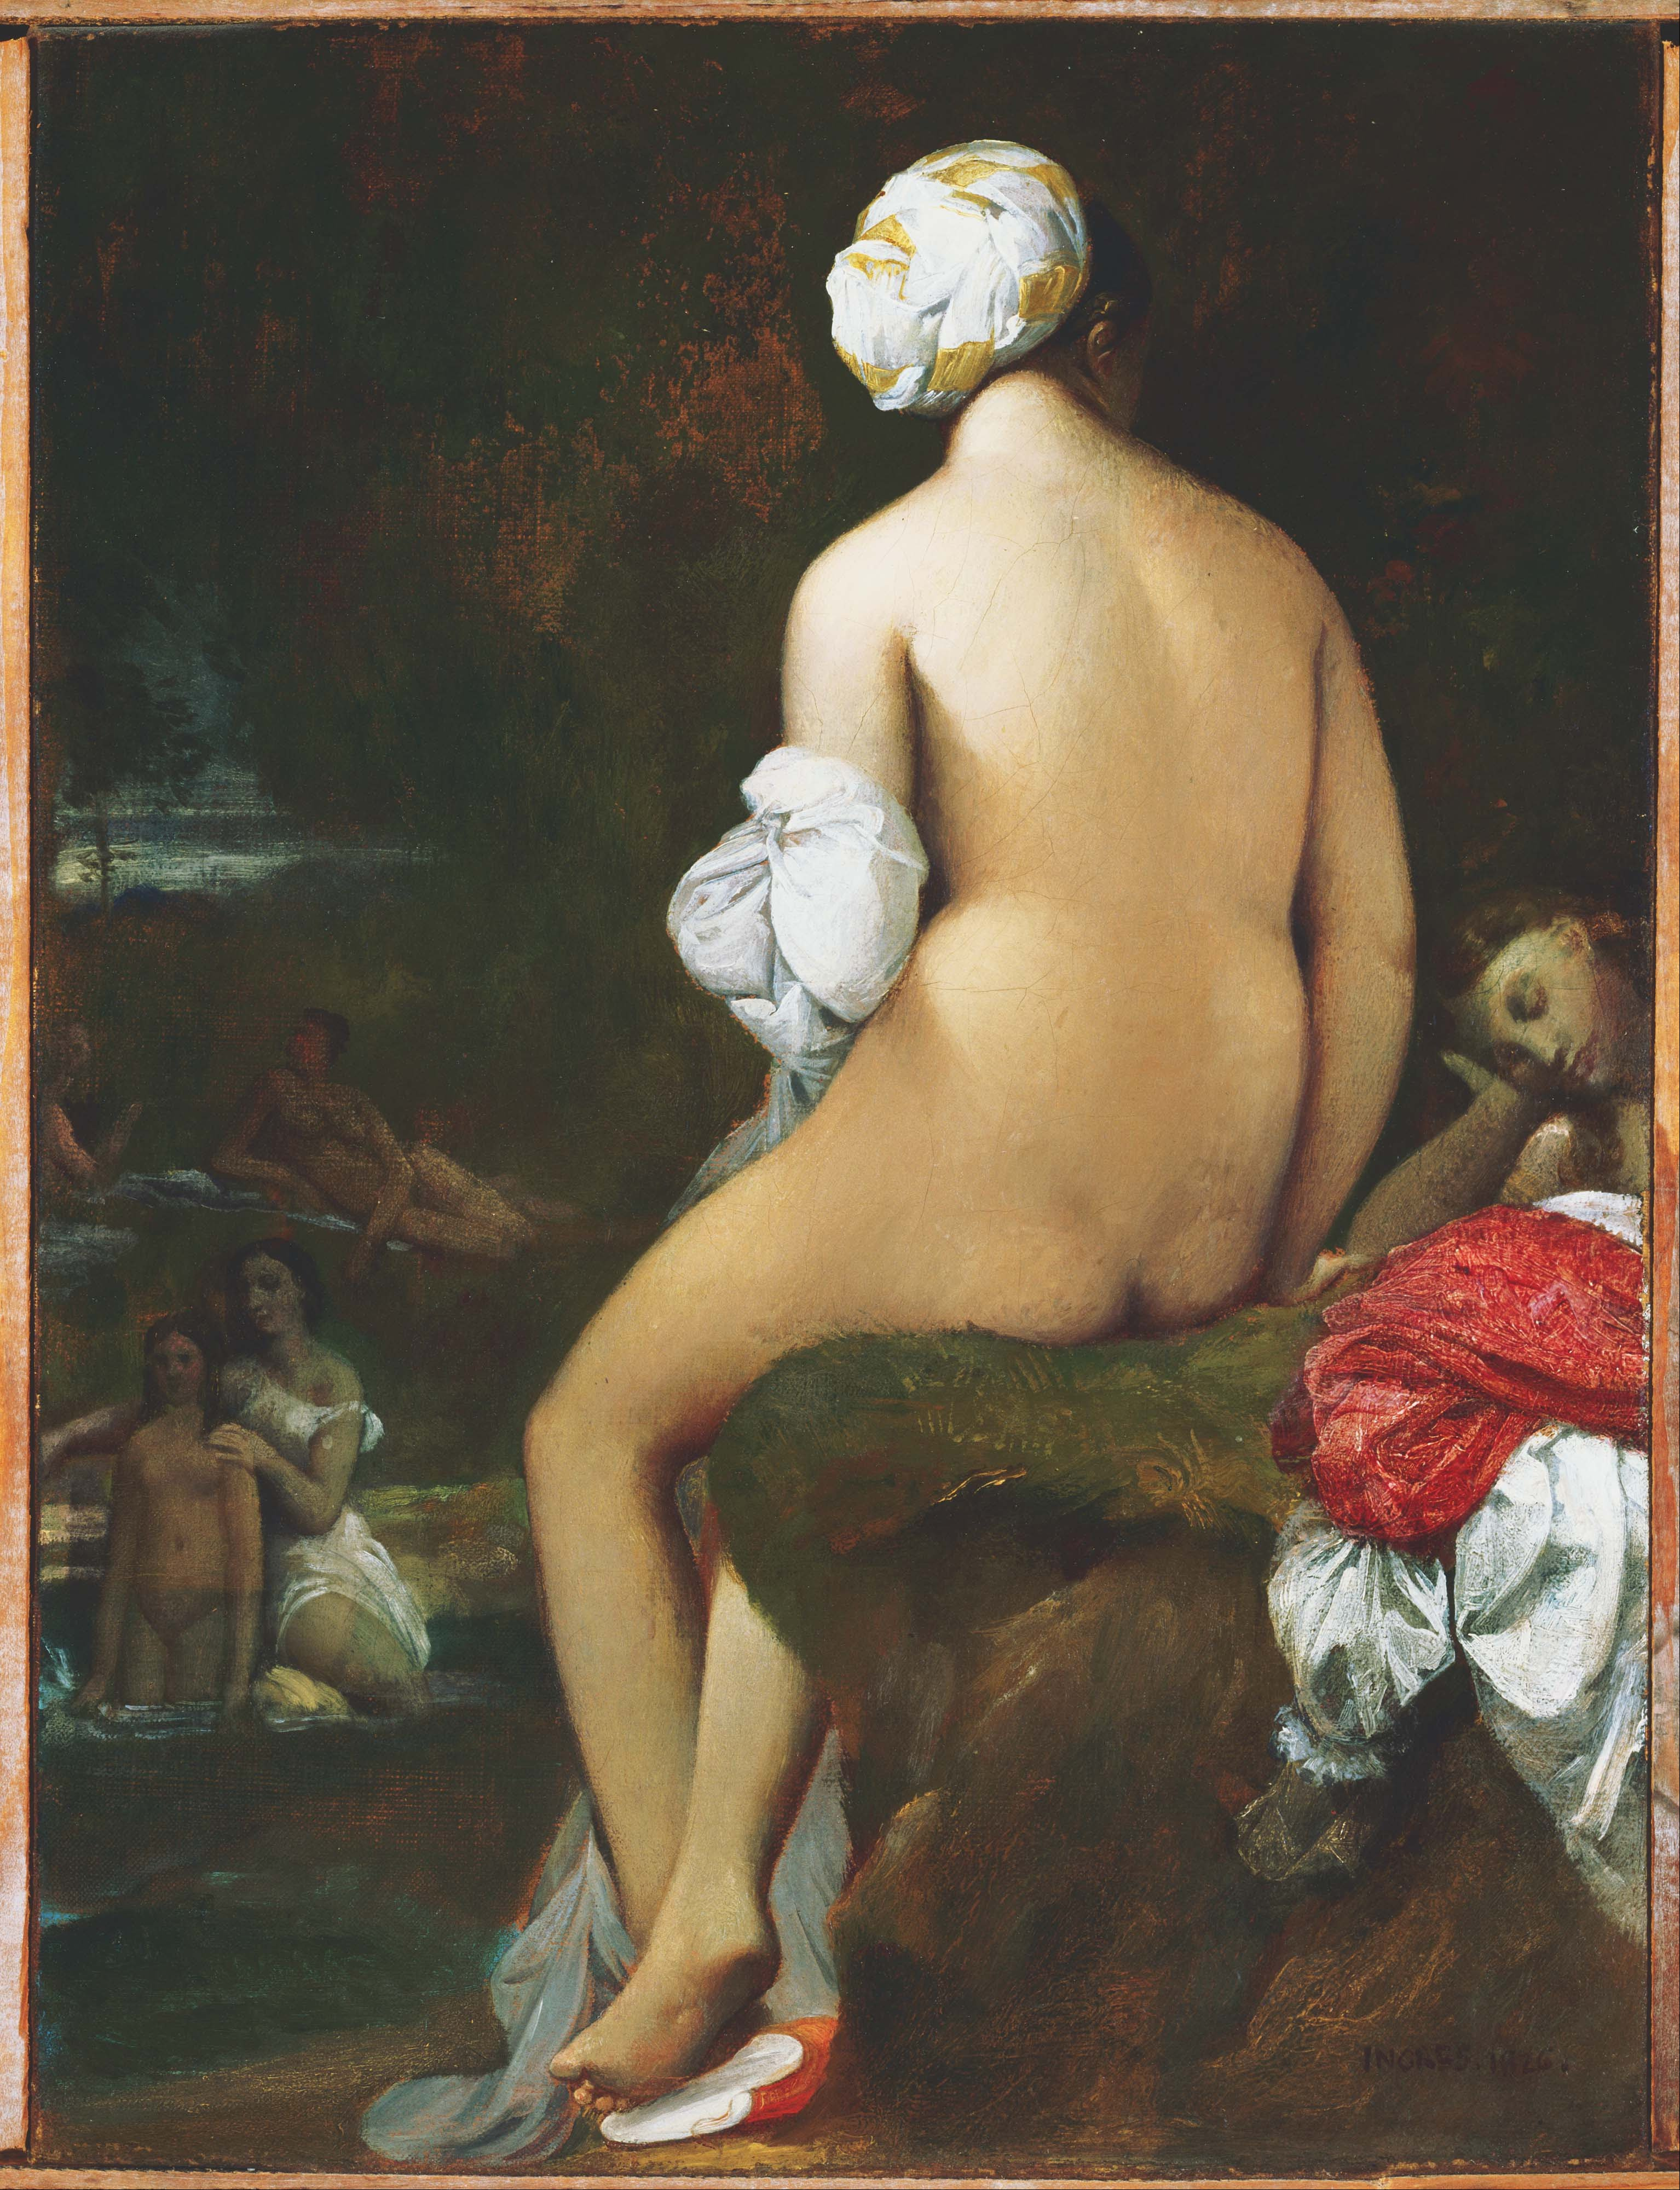 La petite baigneuse by Jean-Auguste-Dominique Ingres - 1826 